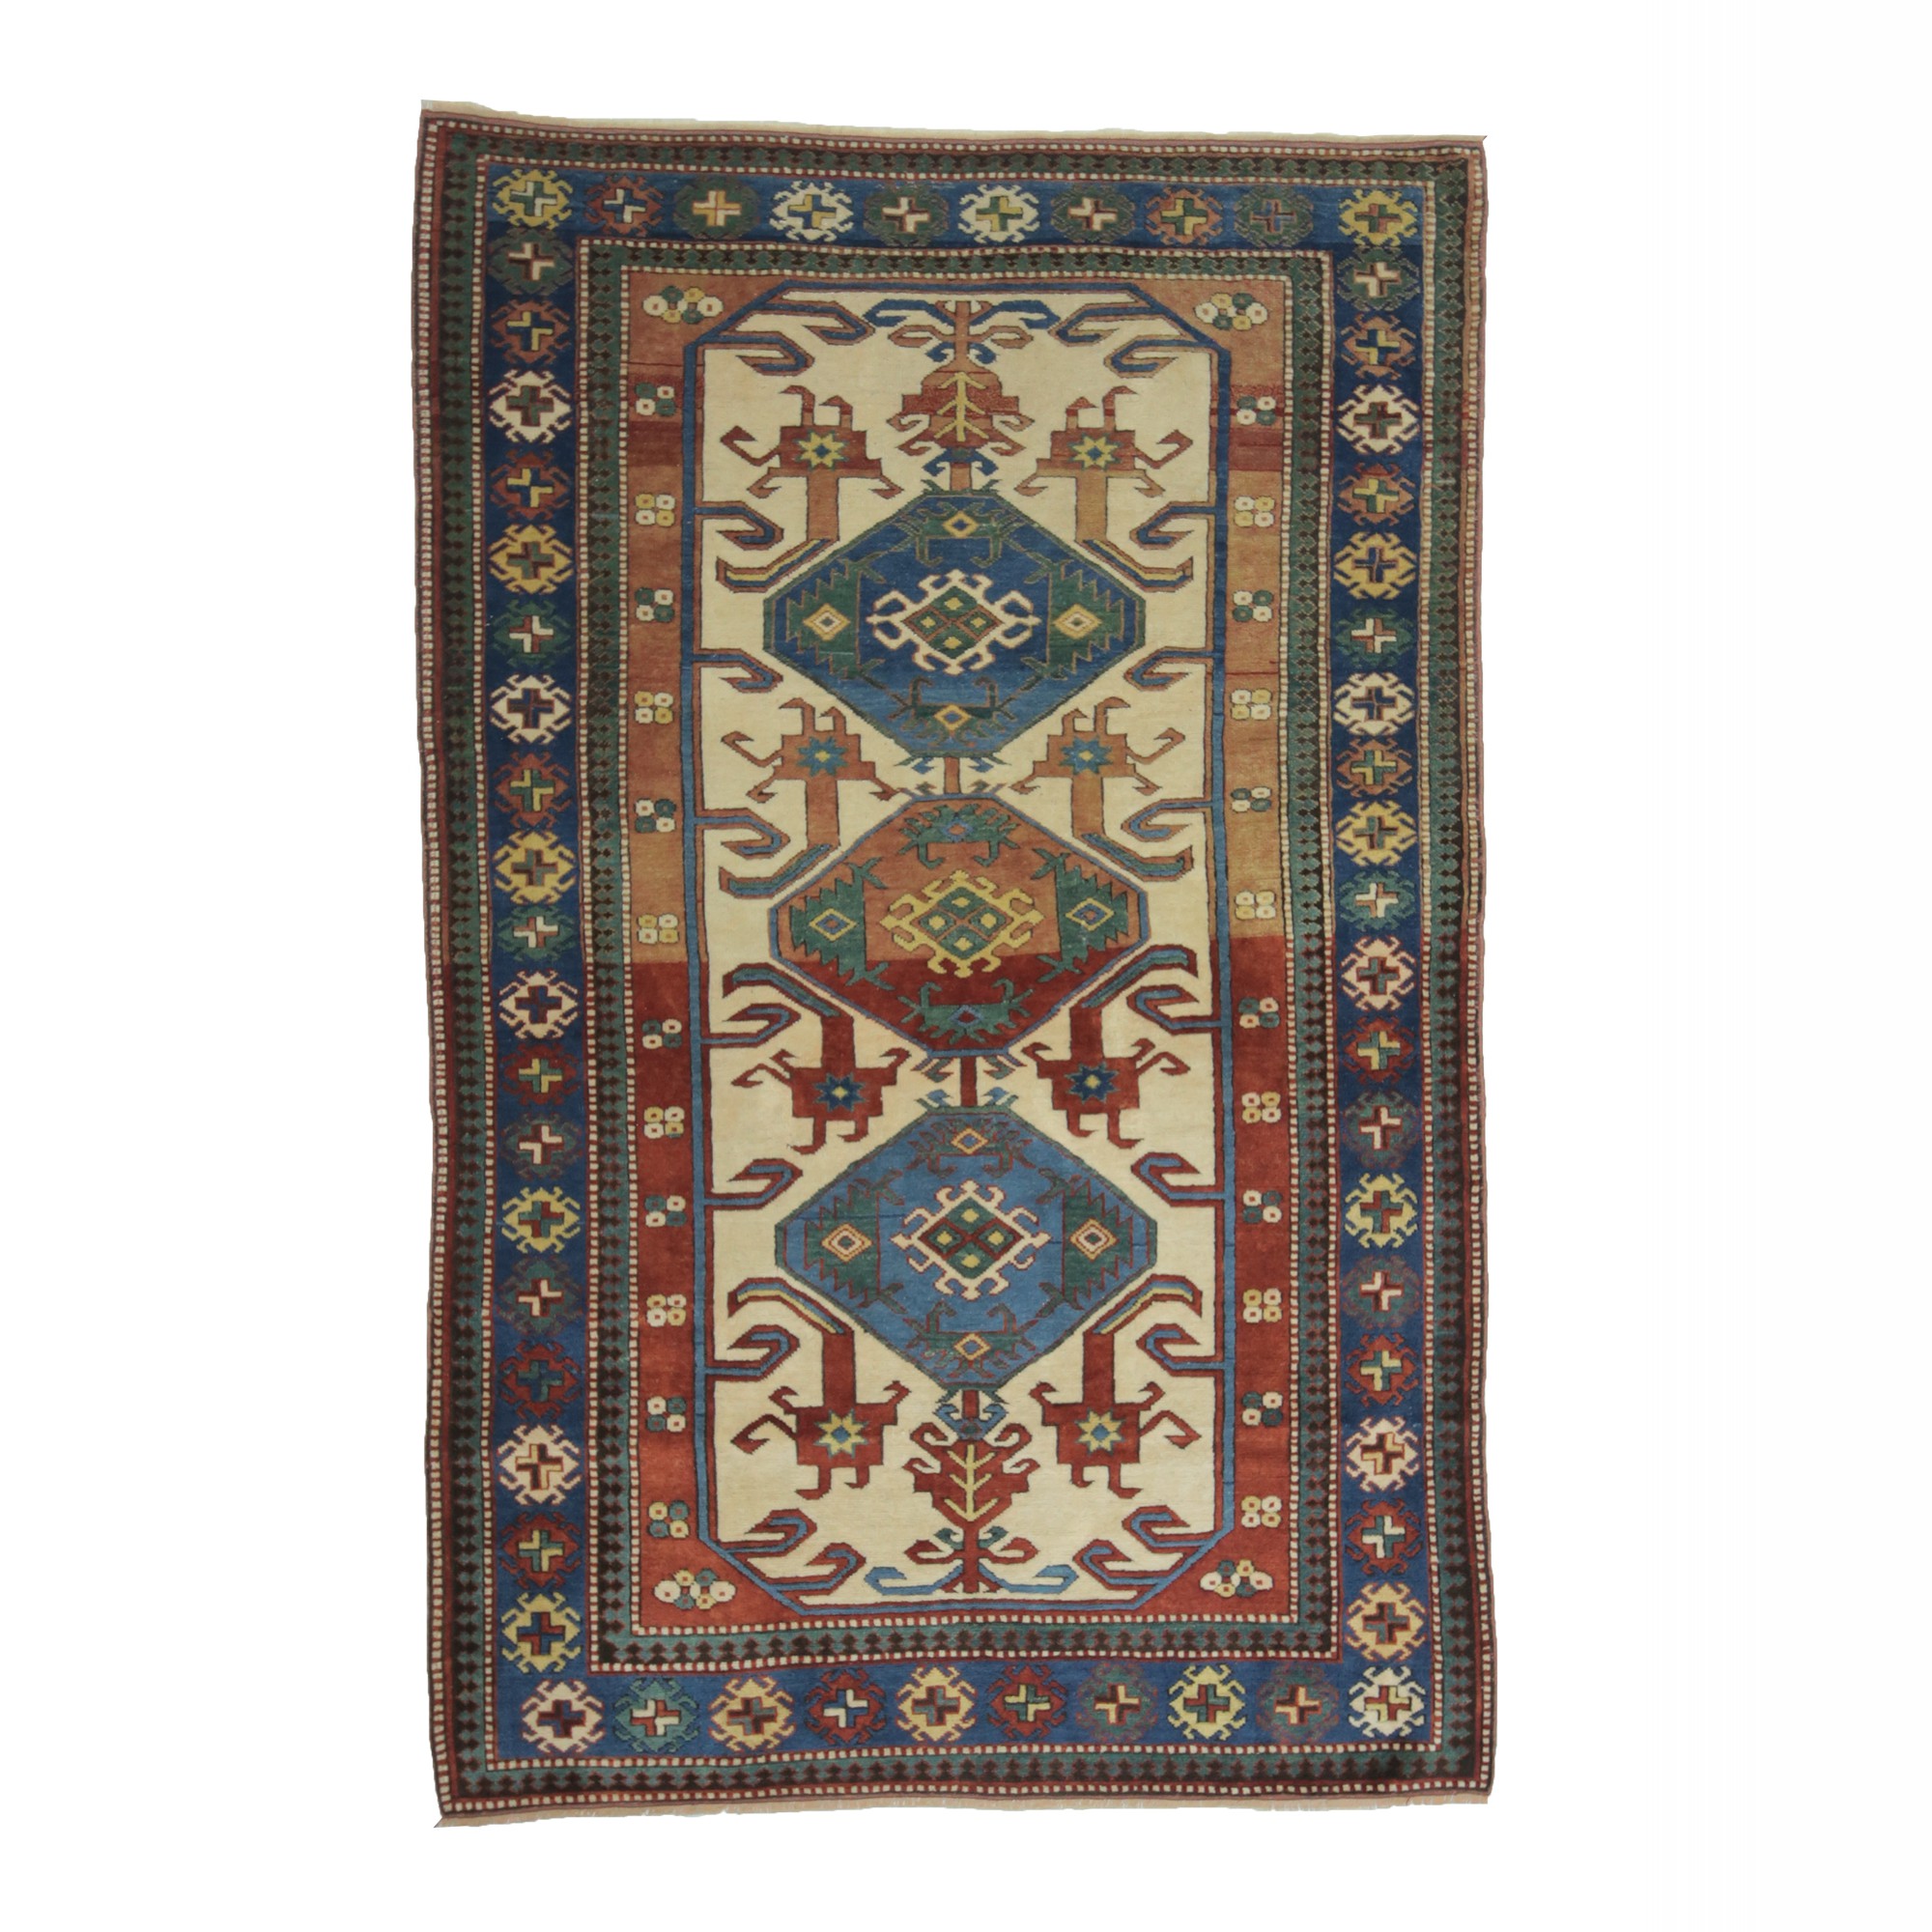 3856  140,219 - Turkish Carpet Rug 